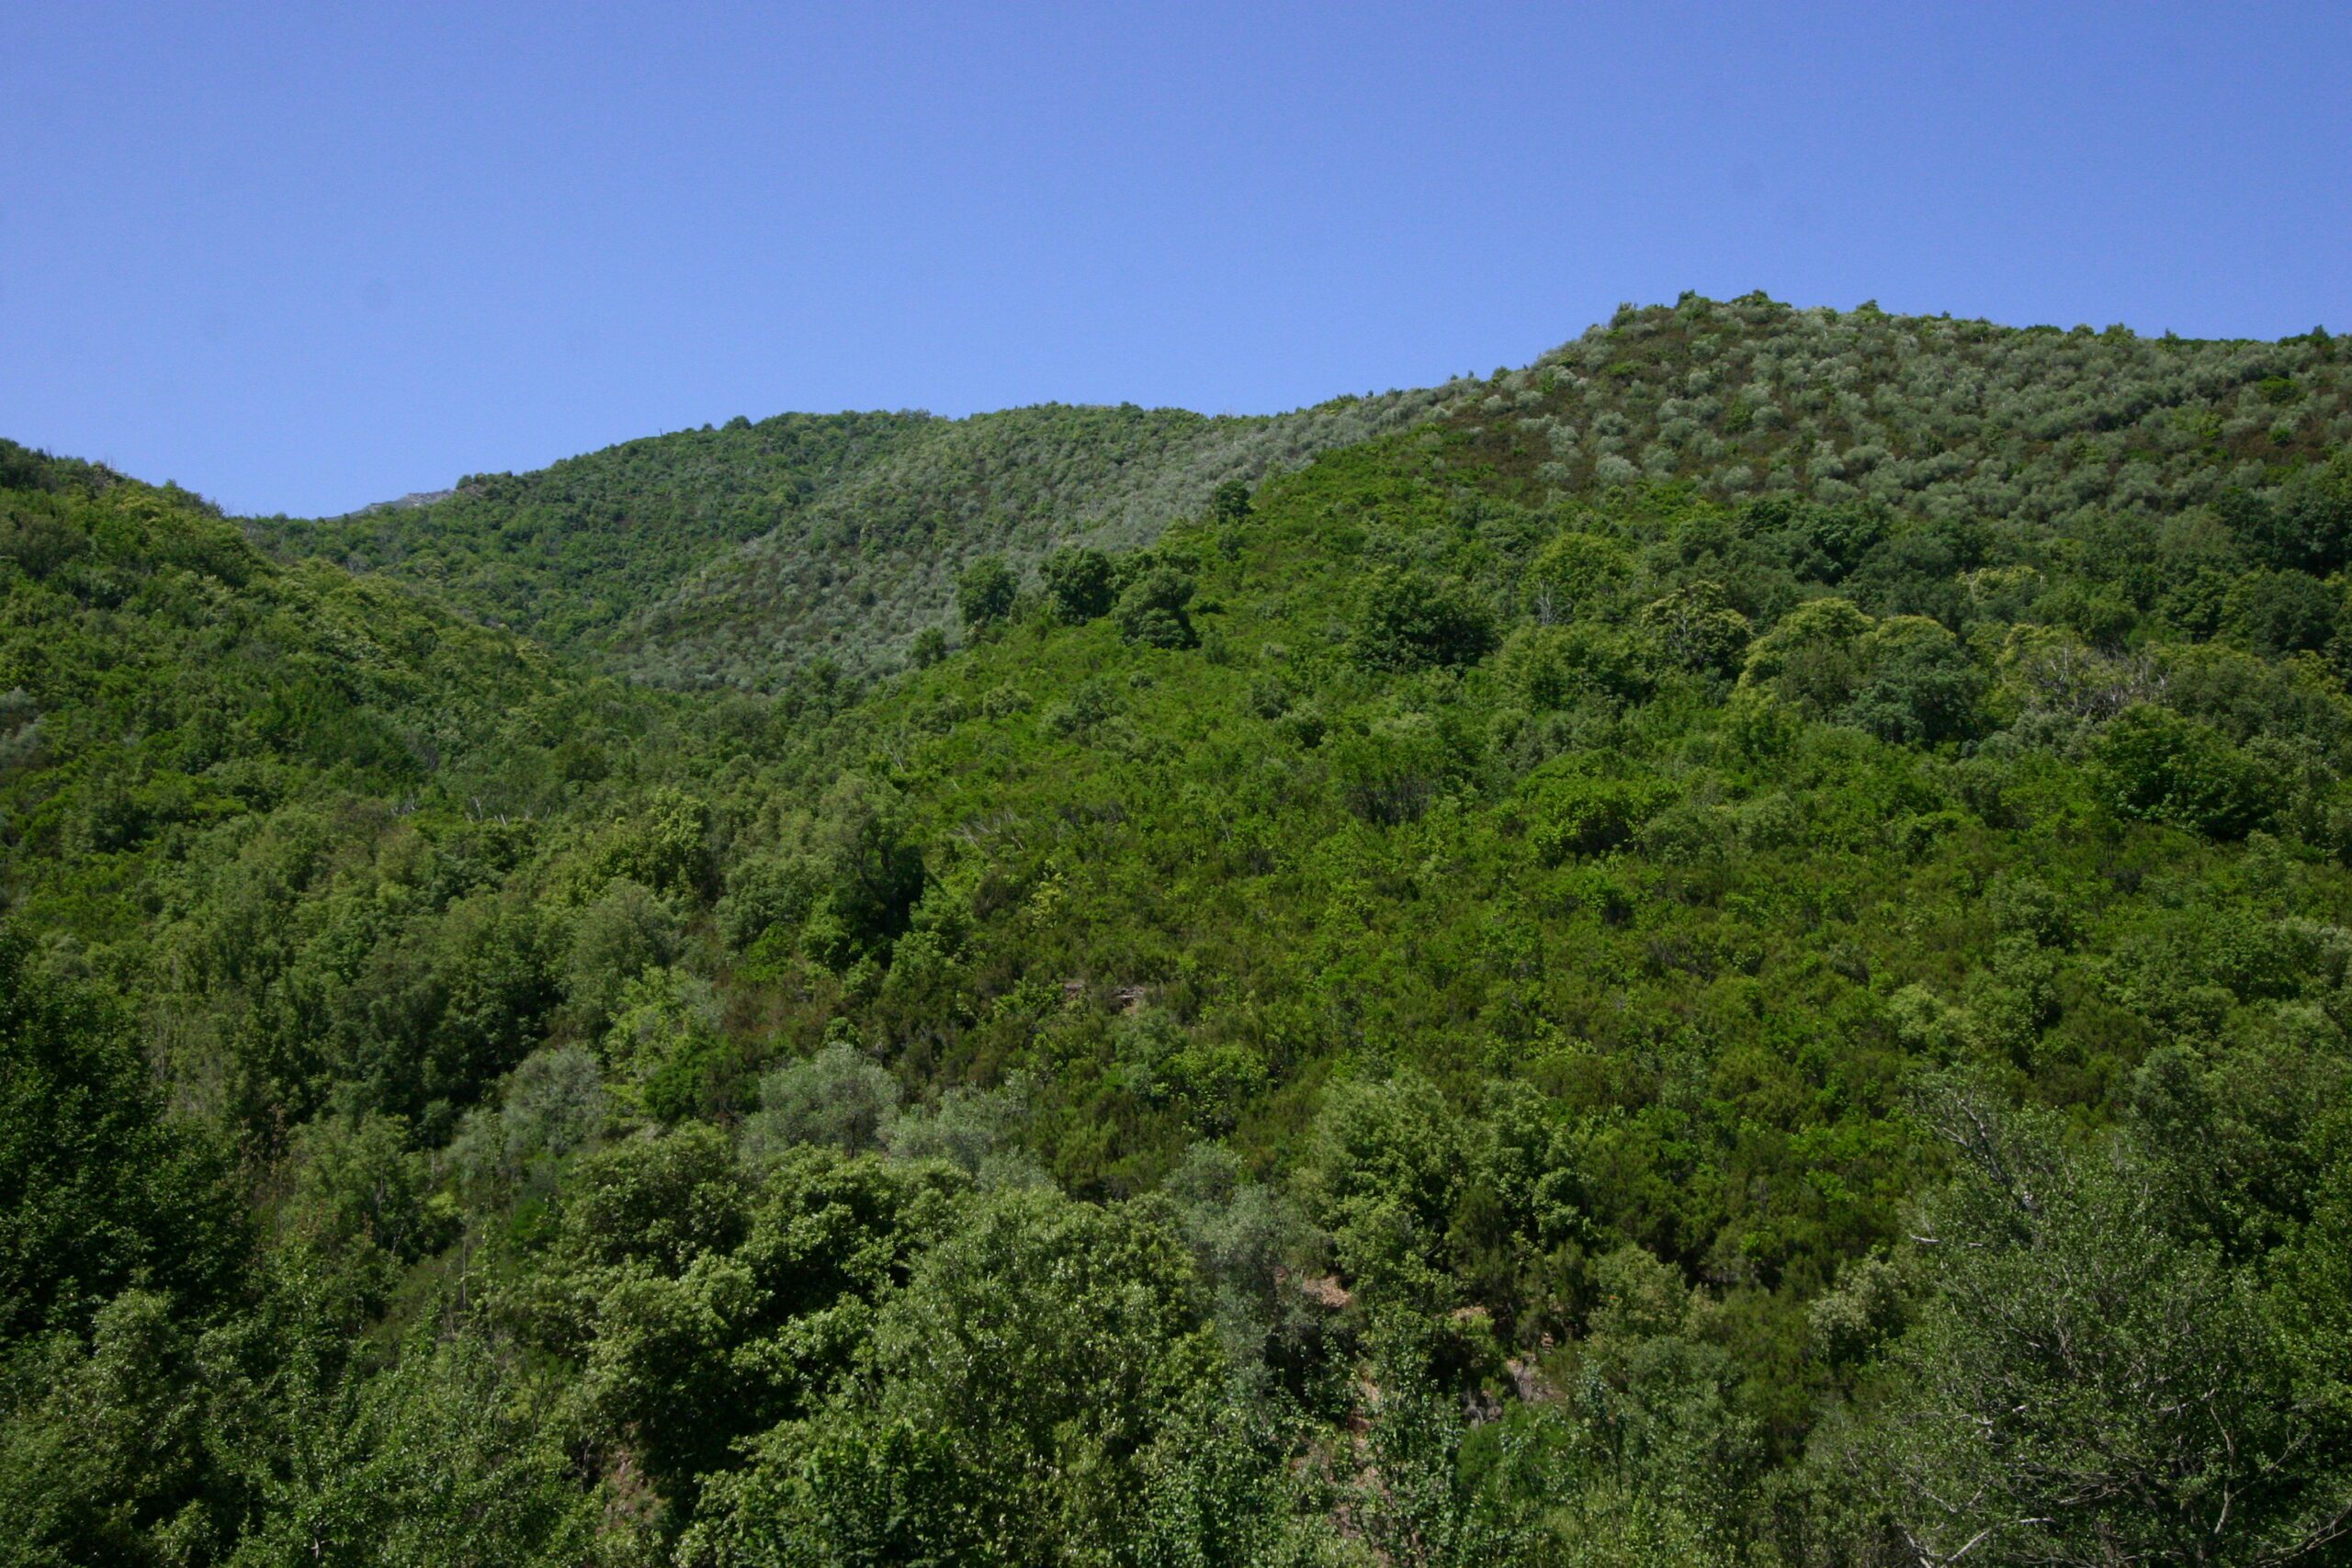 Les oliveraies qui occupent encore une grande partie de certains versants à l’entrée des vallons de Casacconi sont aujourd'hui à l'abandon, envahies par un maquis à cistes dominant. Elles restent cependant bien lisibles dans le paysage végétal auquel elles donnent des tonalités argentées et une texture particulière, rugueuse et grenue